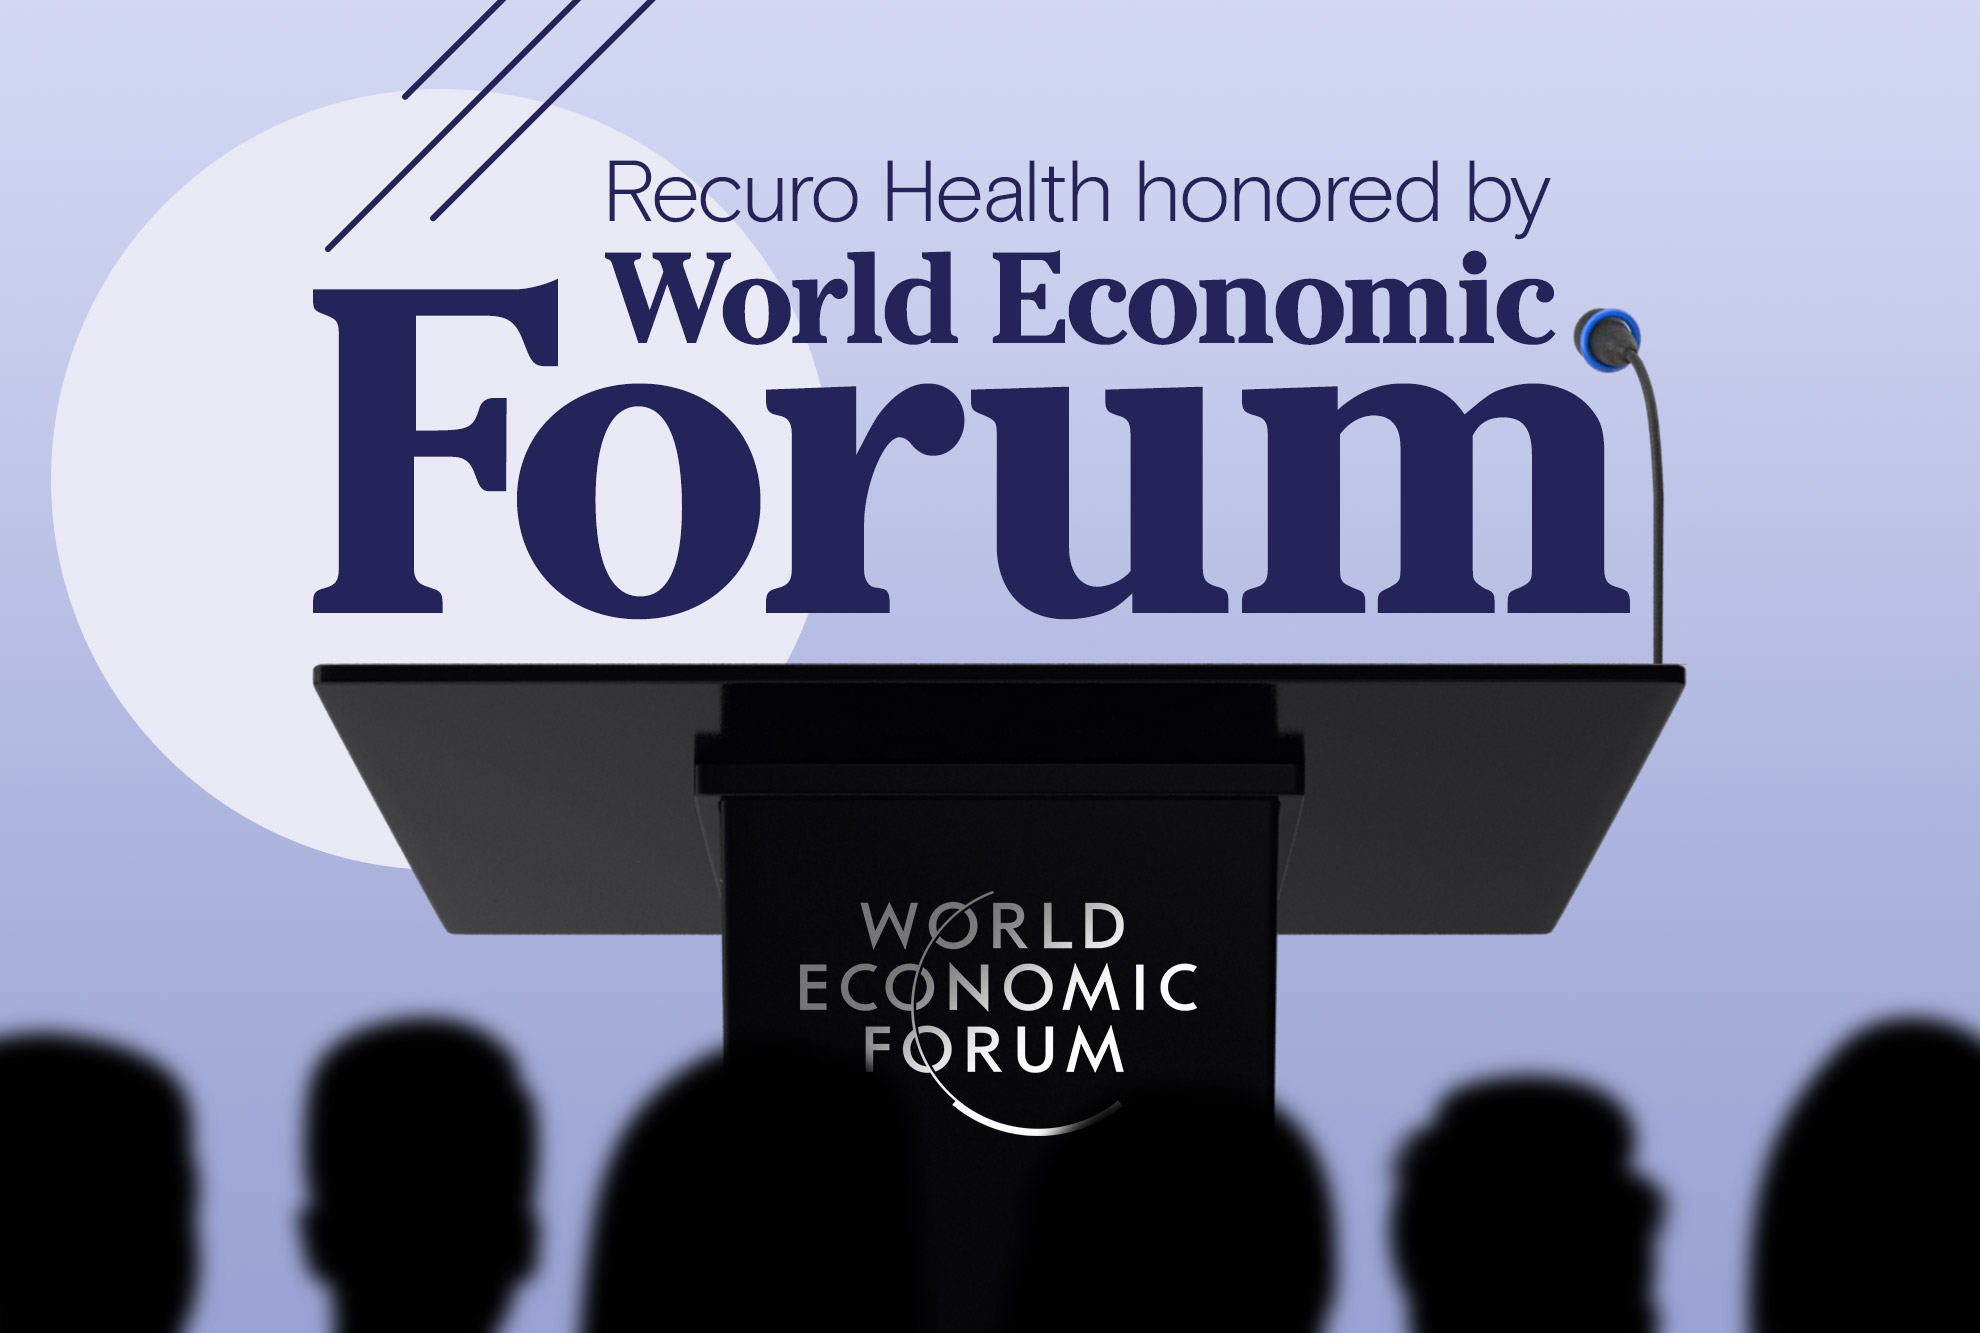 Recuro Health premiada como pionera tecnológica por el Foro Económico Mundial  